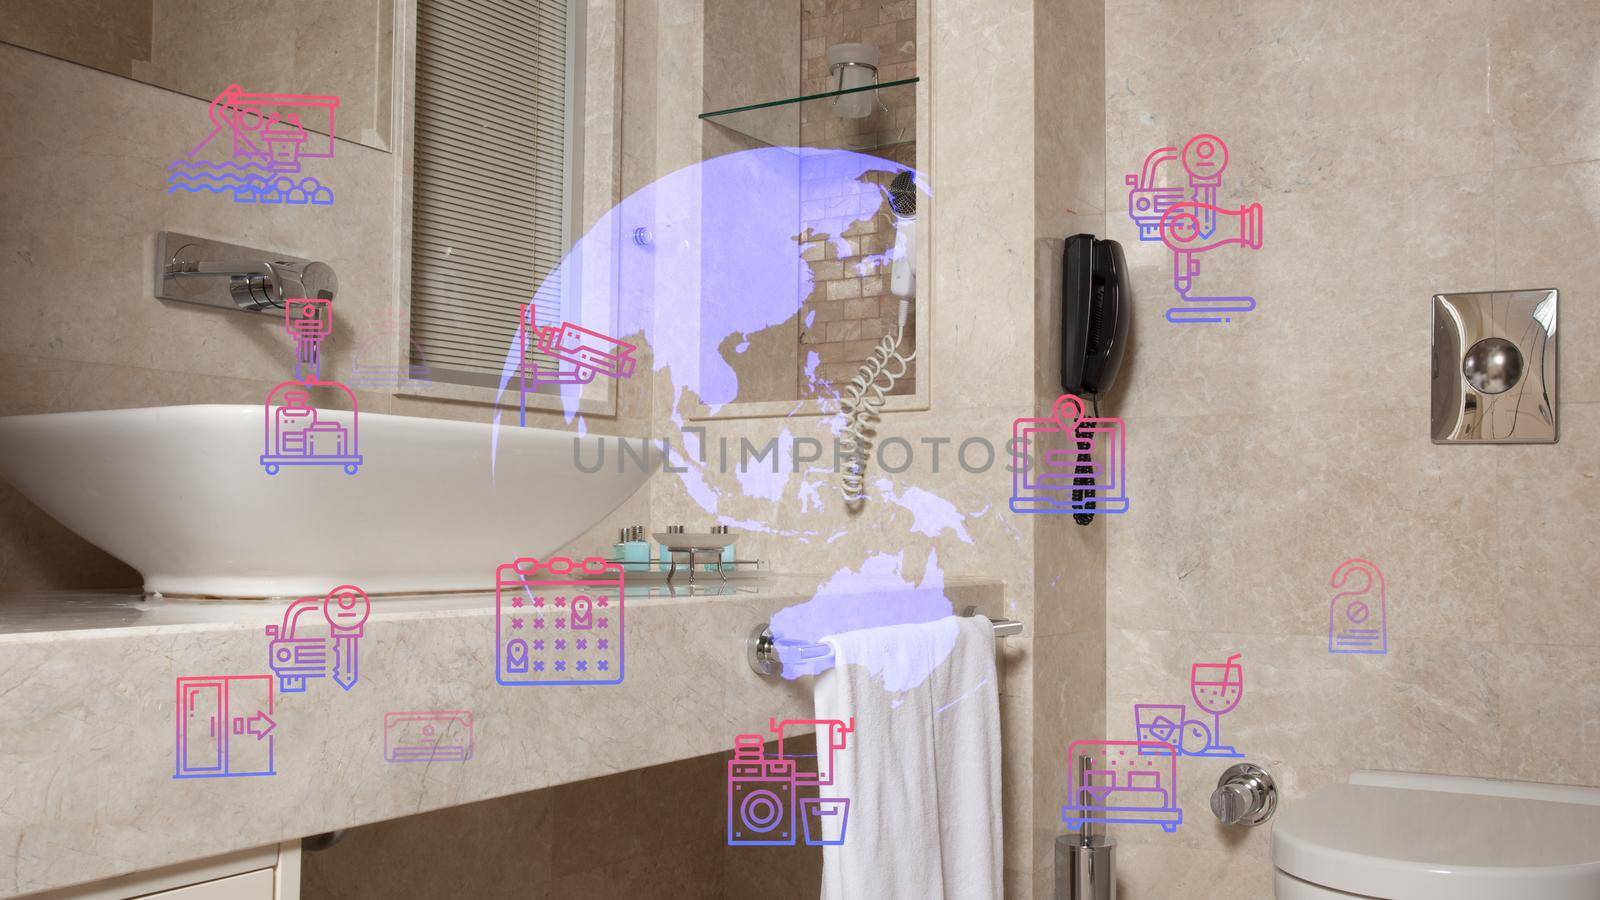 Luxury Bathroom Interior, minimalist interior in white colors with bathroom accessories , mirror and shower head, round mirror in modern interior by senkaya